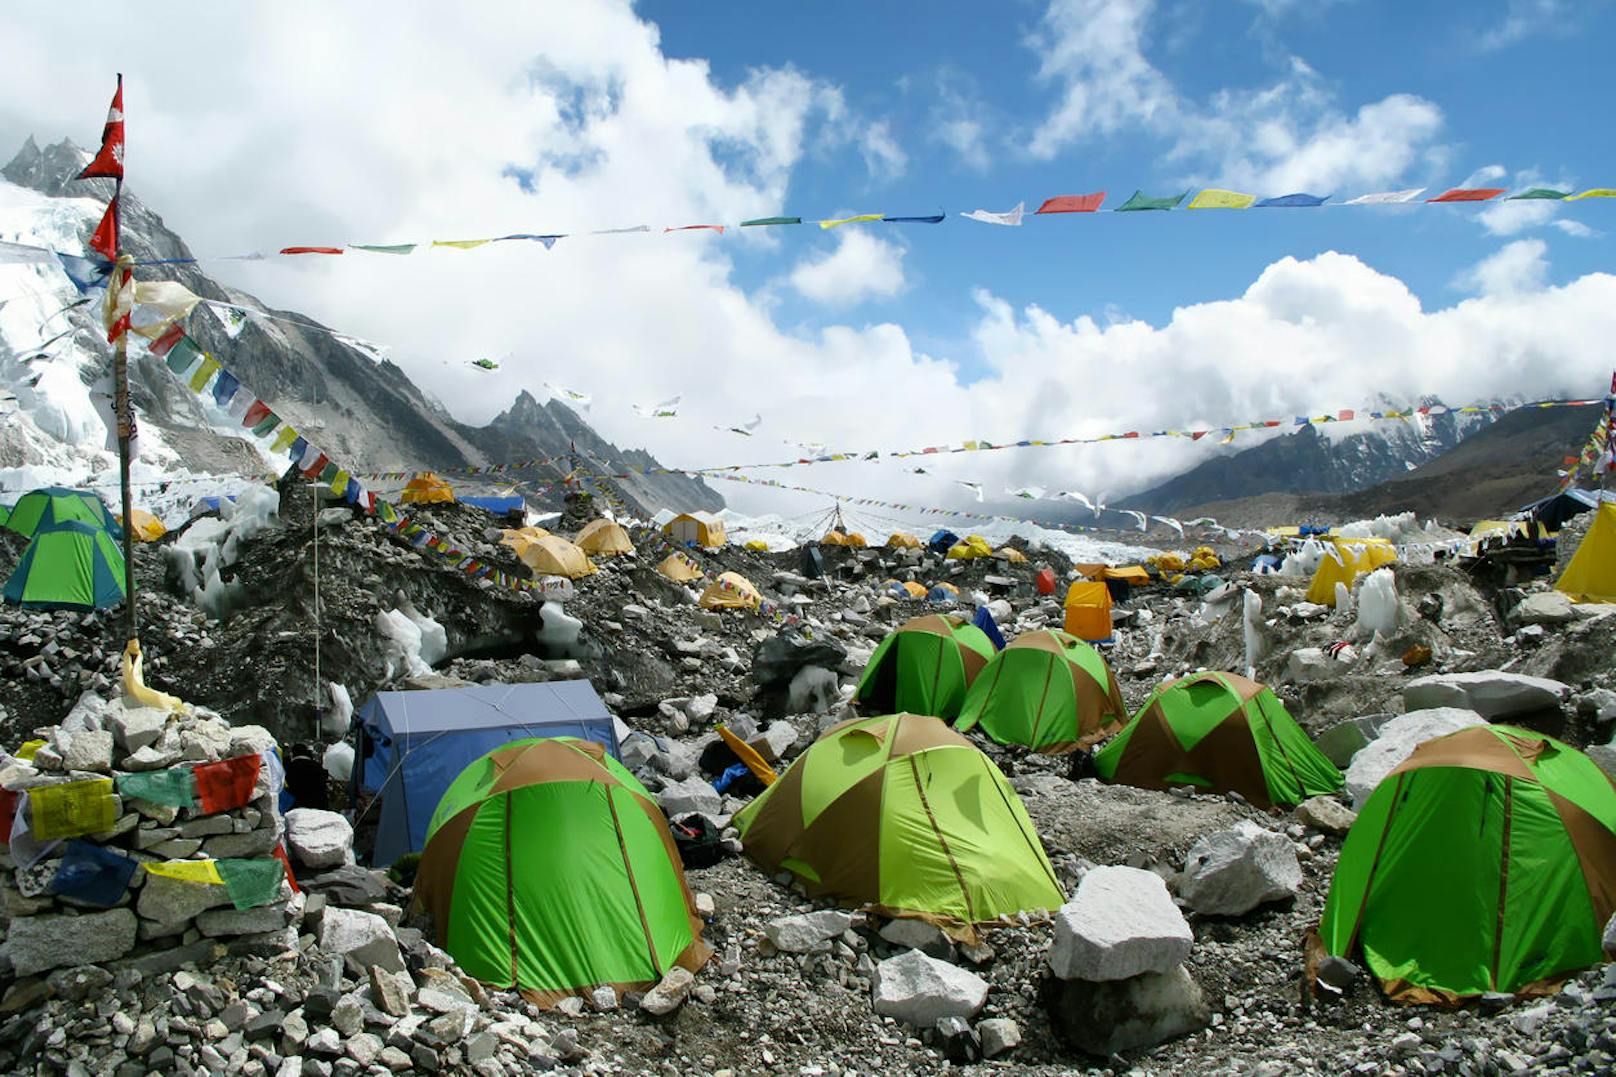 Müll und Massentourismus am Gipfel der Welt: Der <b>Mount Everest</b> wird immer mehr zum Ausflugsziel für abenteuerlustige Touristen. Das wirkt sich auch auf die Corona-Zahlen aus. (Archivbild.)